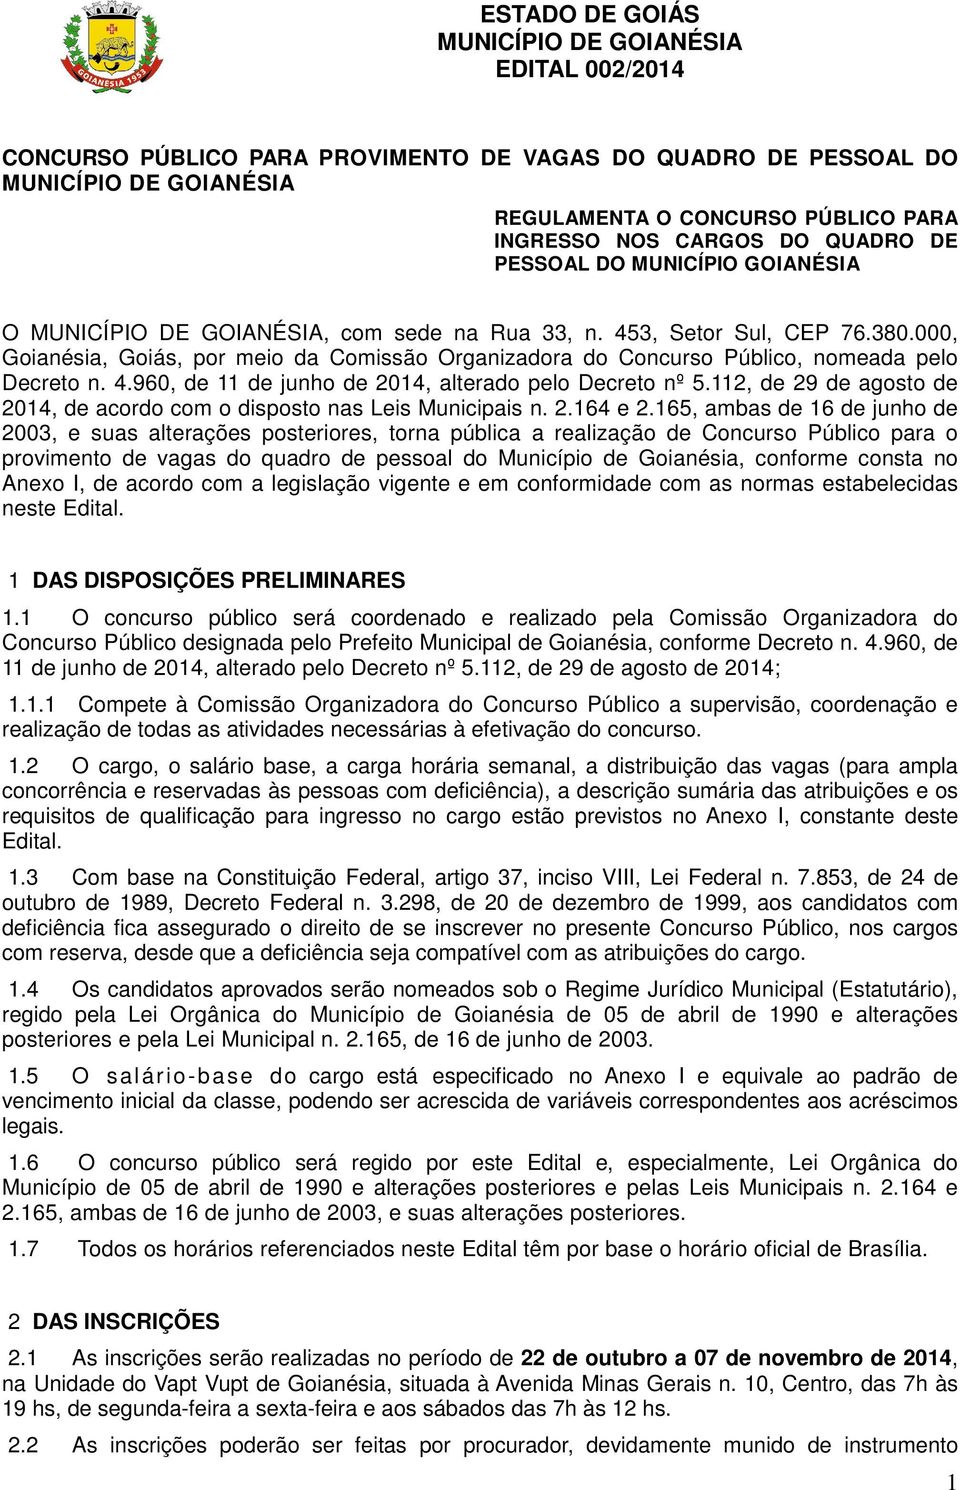 000, Goianésia, Goiás, por meio da Comissão Organizadora do Concurso Público, nomeada pelo Decreto n. 4.960, de 11 de junho de 2014, alterado pelo Decreto nº 5.